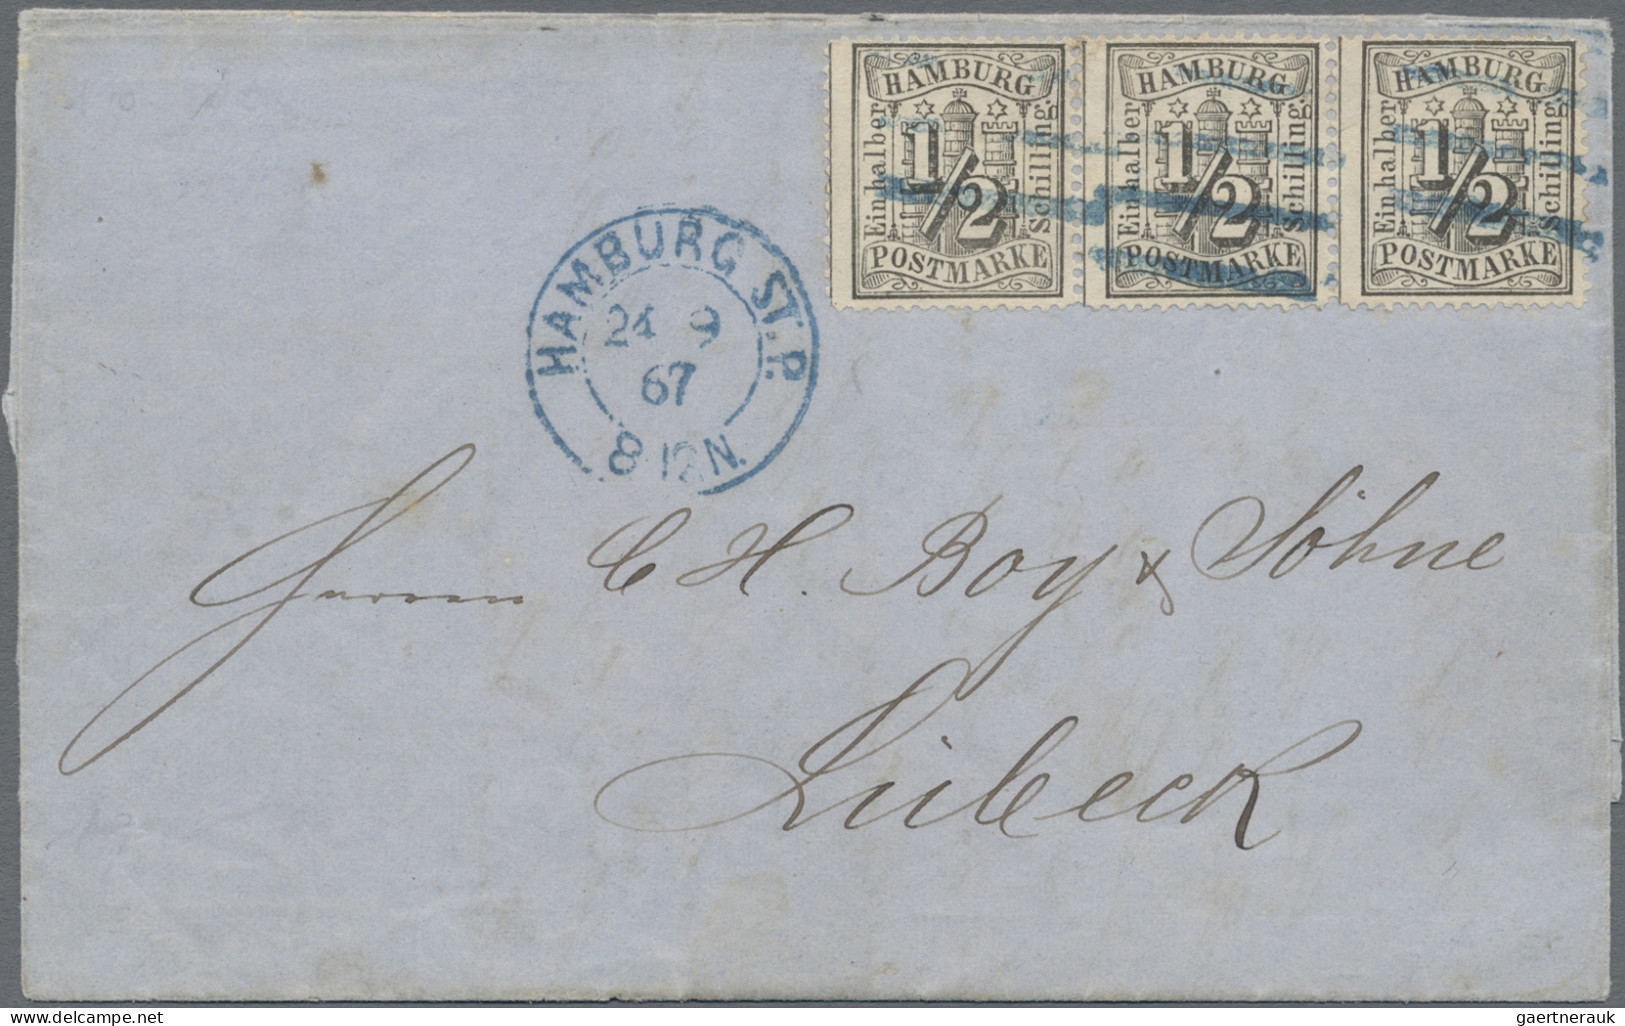 Hamburg - Marken und Briefe: 1859/1866, 19 herausragende Einzelstücke in erstkla